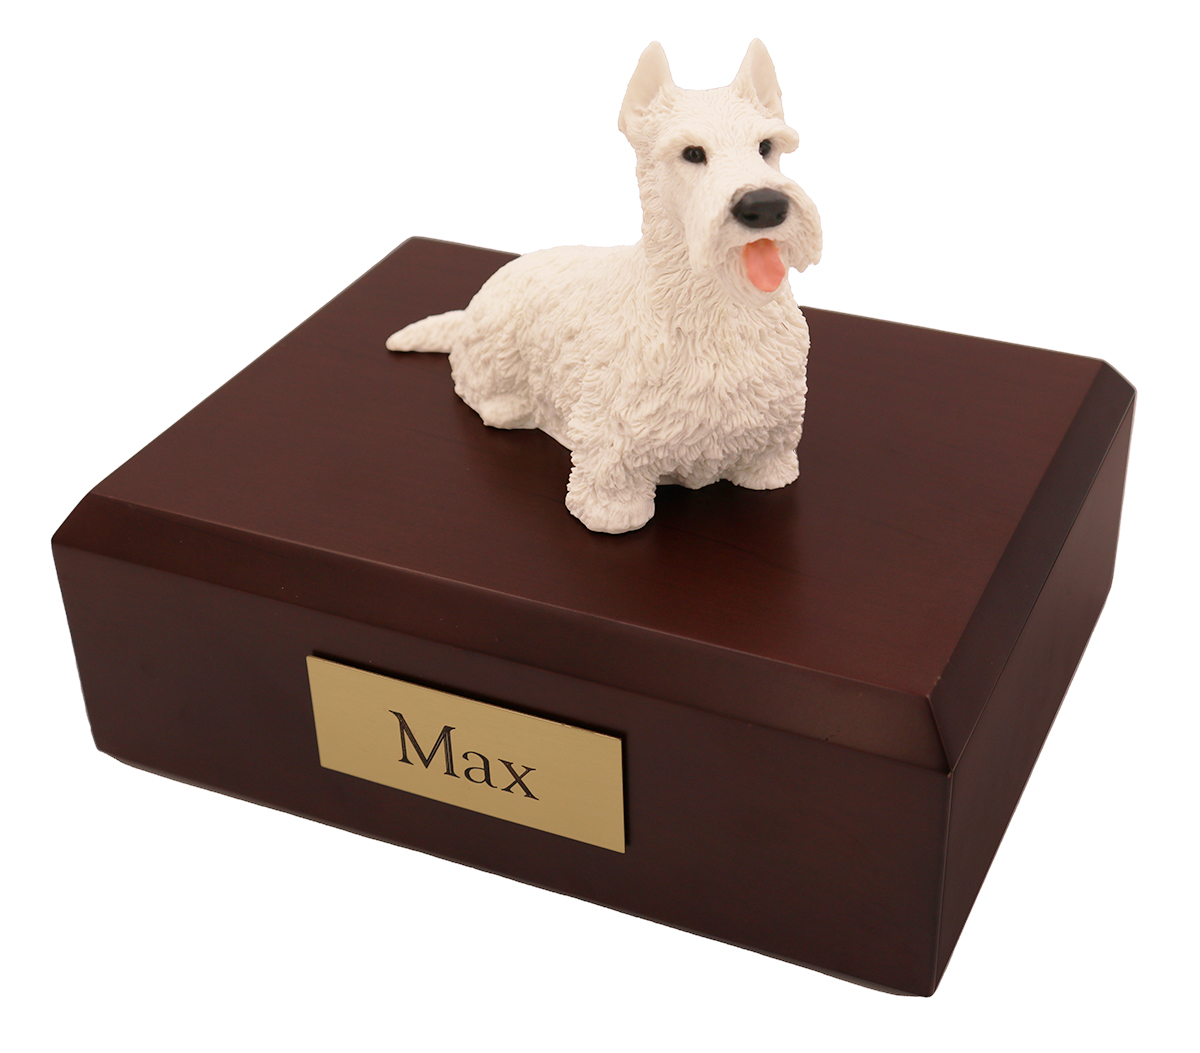 Dog, Scottish Terrier, White - Figurine Urn